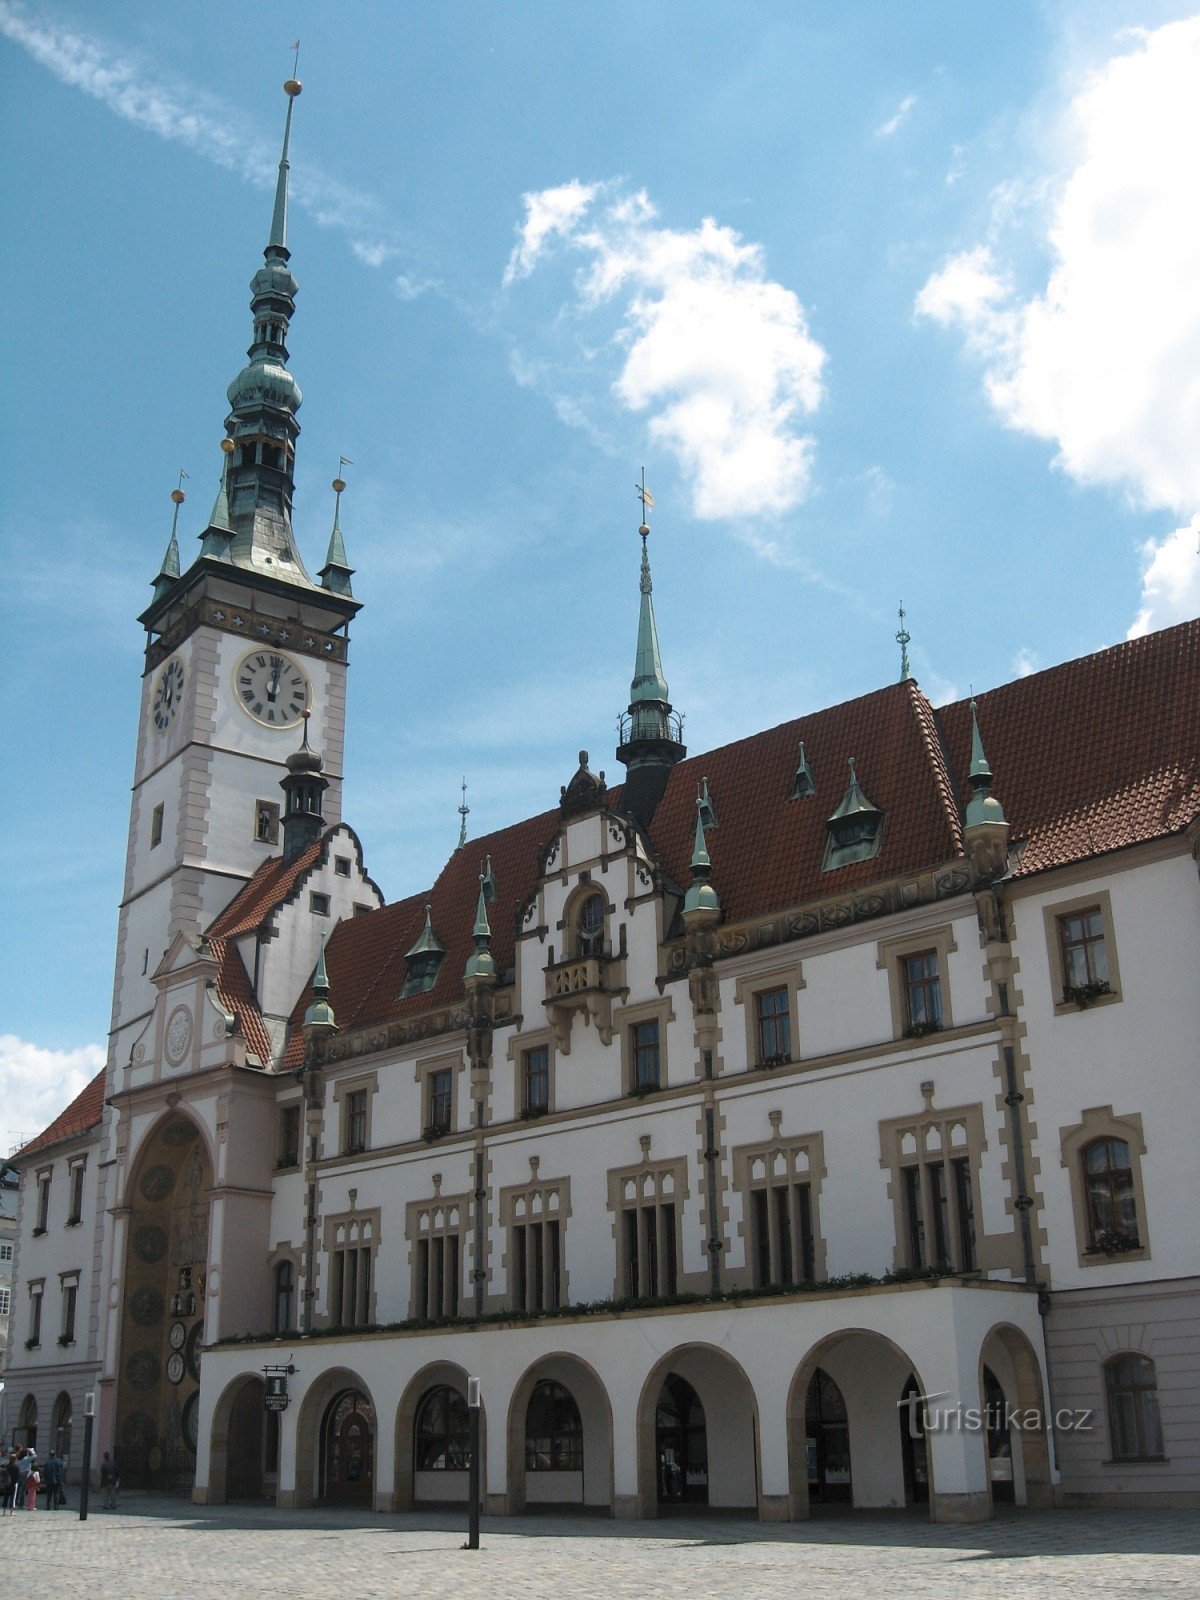 Πίσω από την ιστορία και την ομορφιά της πόλης Olomouc